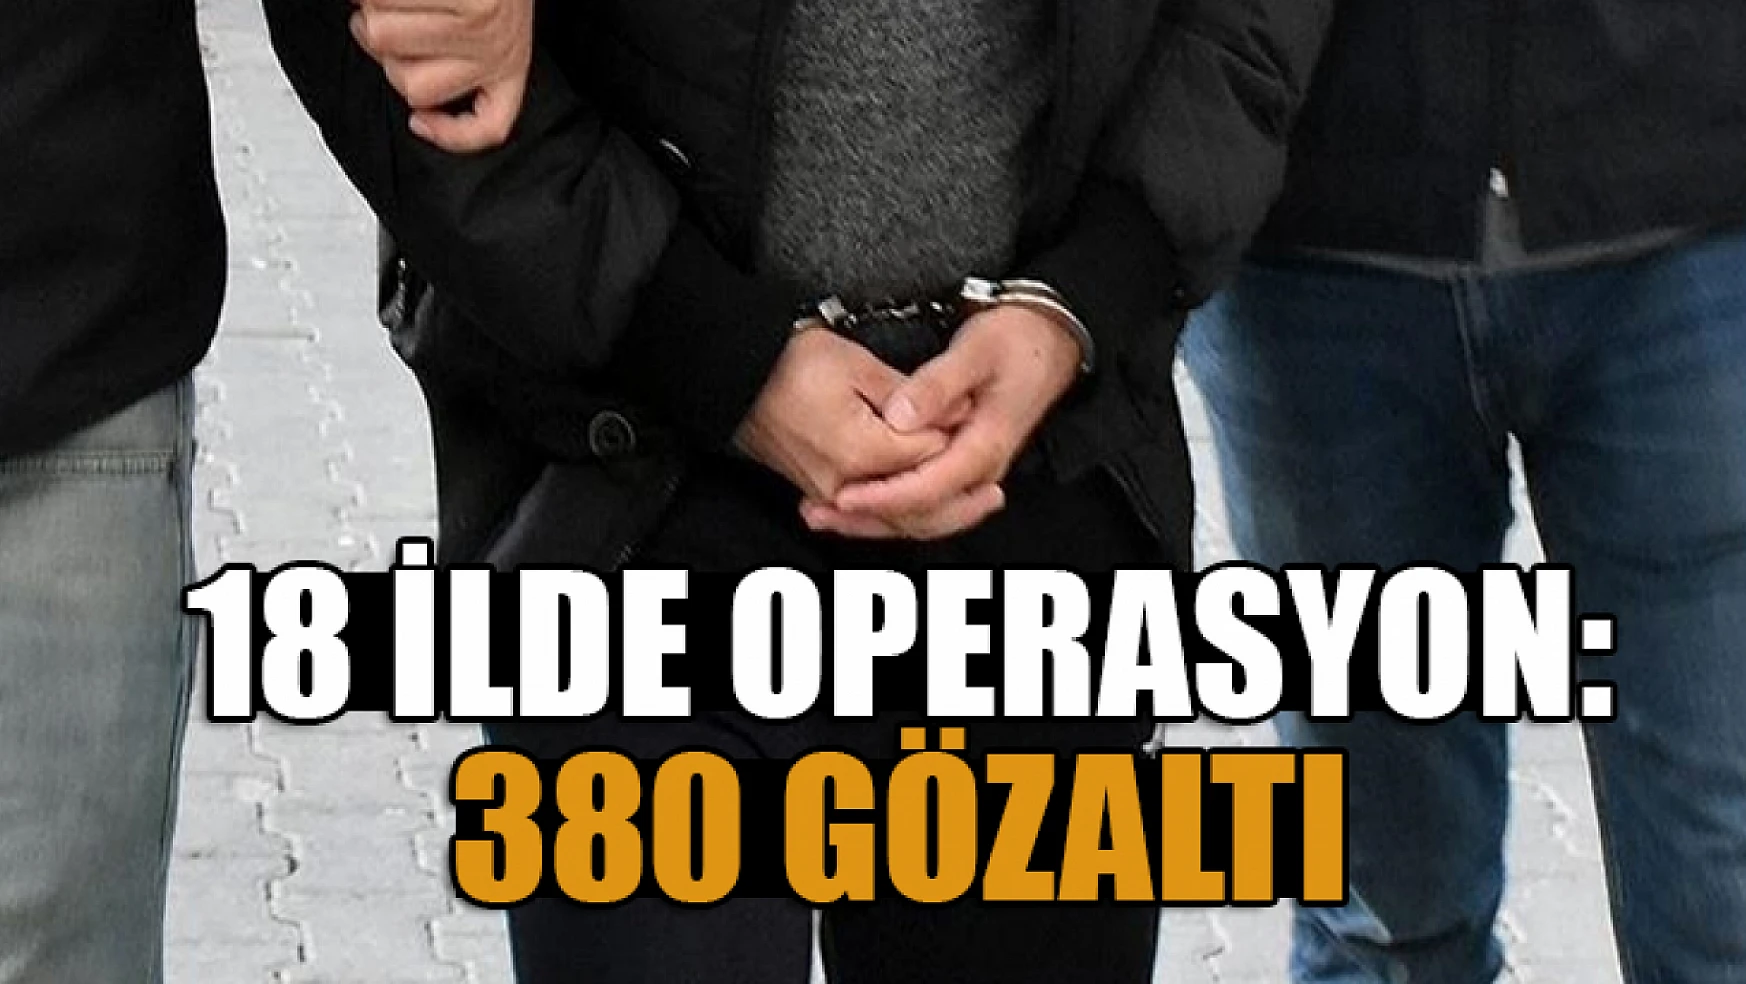 18 ilde operasyon: 380 gözaltı kararı var